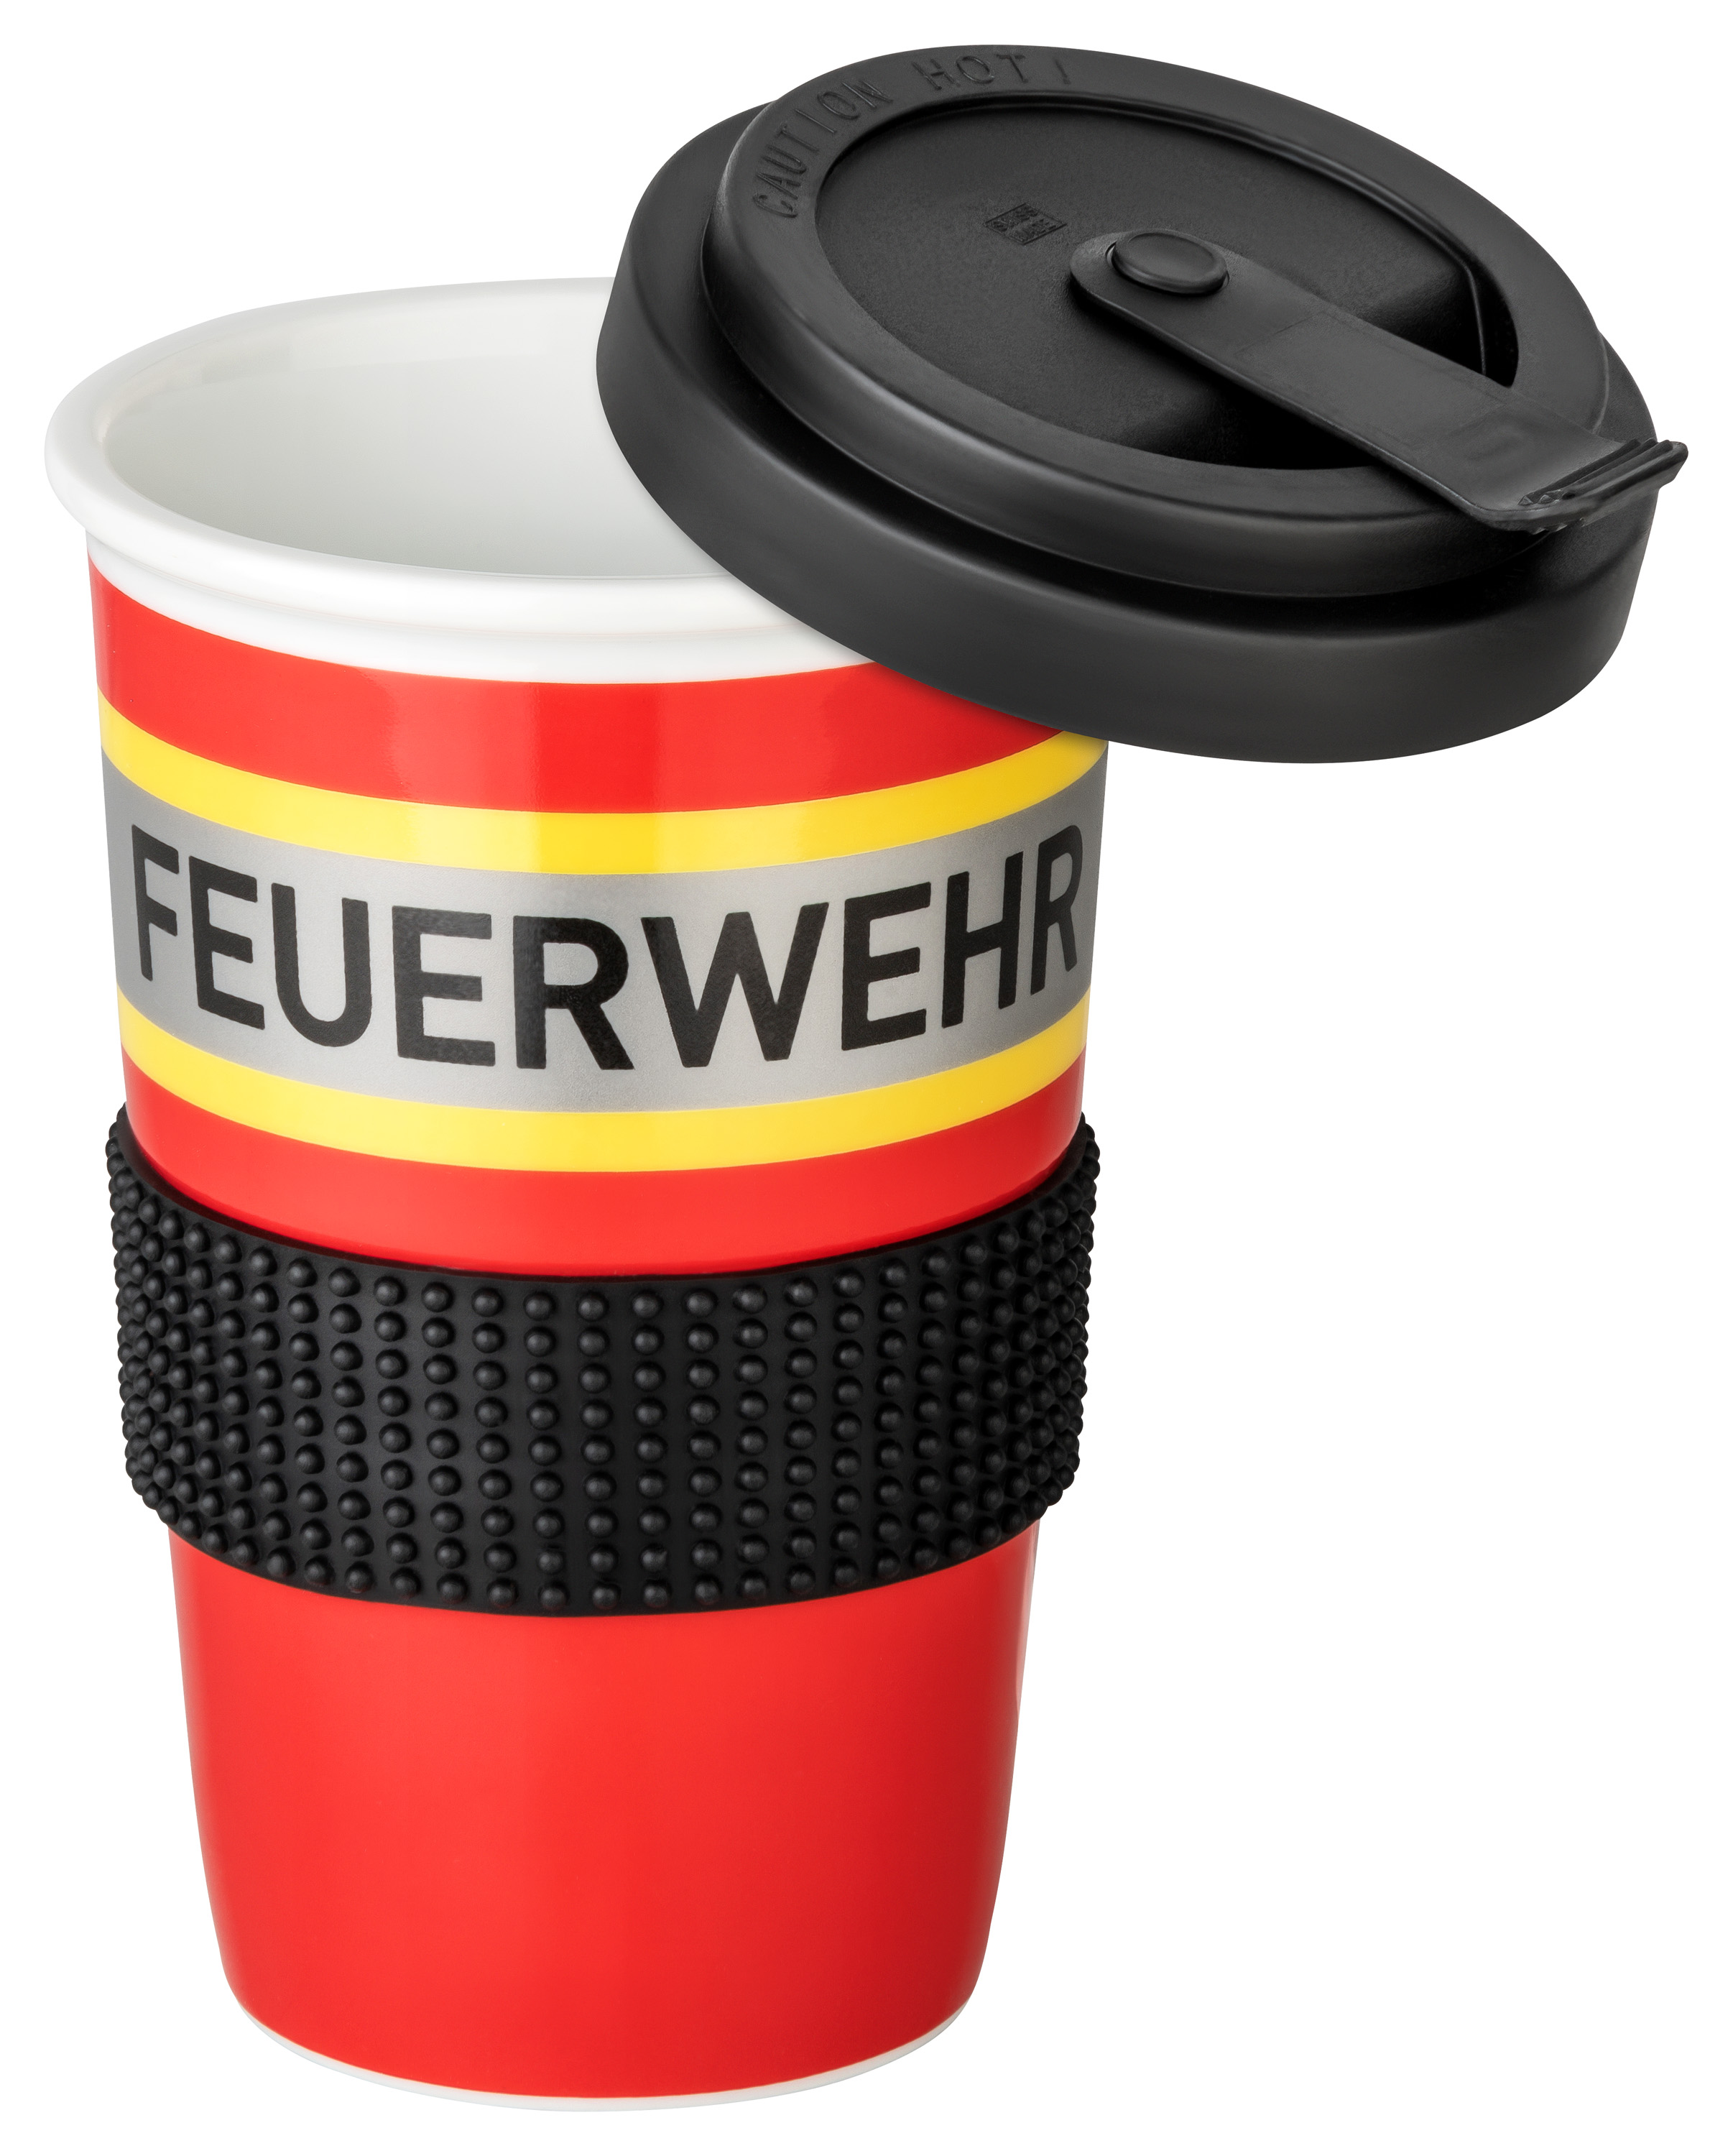 Coffee To-Go Becher aus hochwertigem Porzellan 400ml, rot mit gelb-silber-gelb Feuerwehroptik, Kunststoffdeckel mit Verschluss und Silikonbanderole